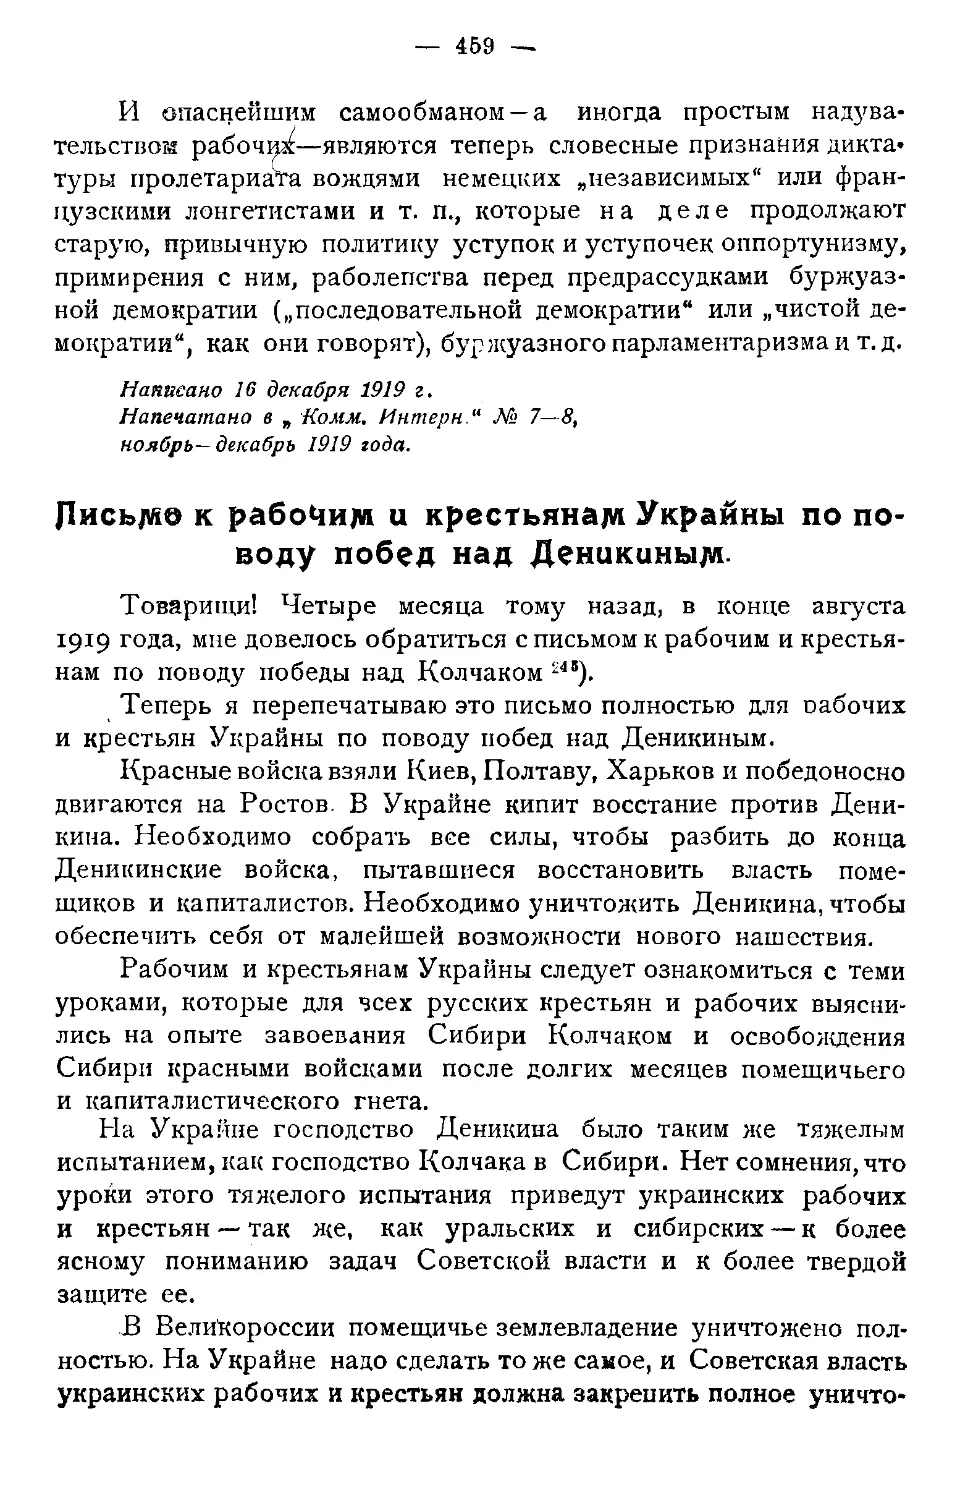 Письмо к рабочим и крестьянам Украины по поводу победы над Деникиным.